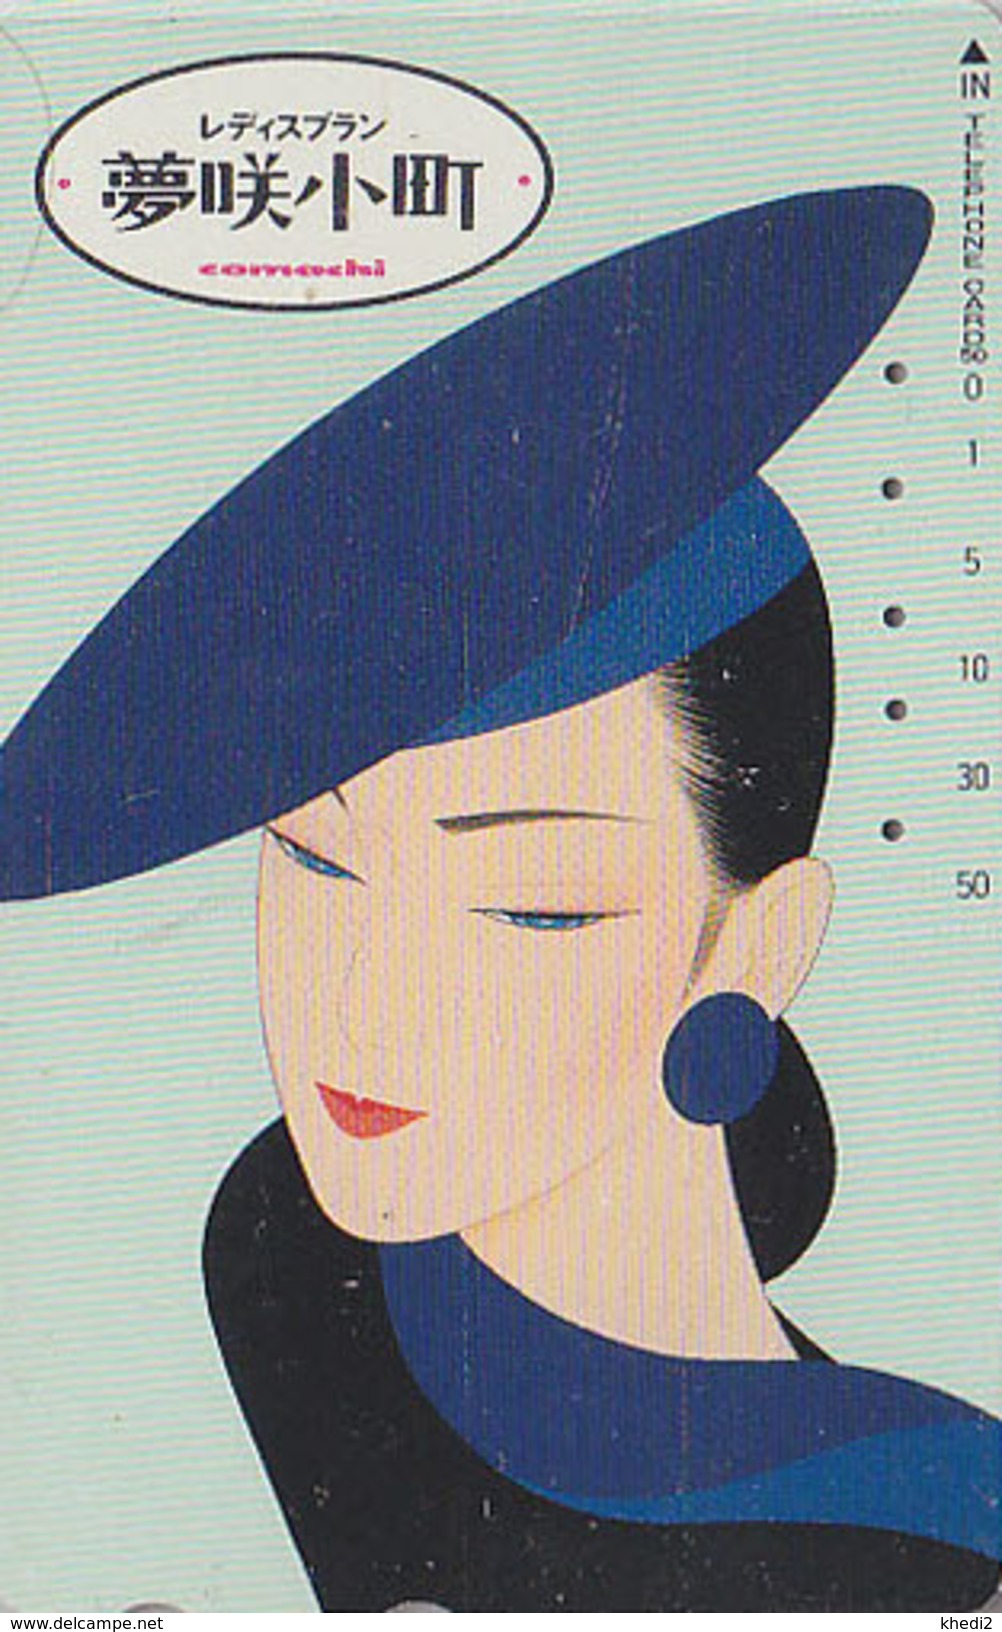 Télécarte Japon / 390-11746 - Femme / COMACHI - Parfum Mode - Woman Girl Perfume Japan Phonecard - Frau TK - 2756 - Parfum